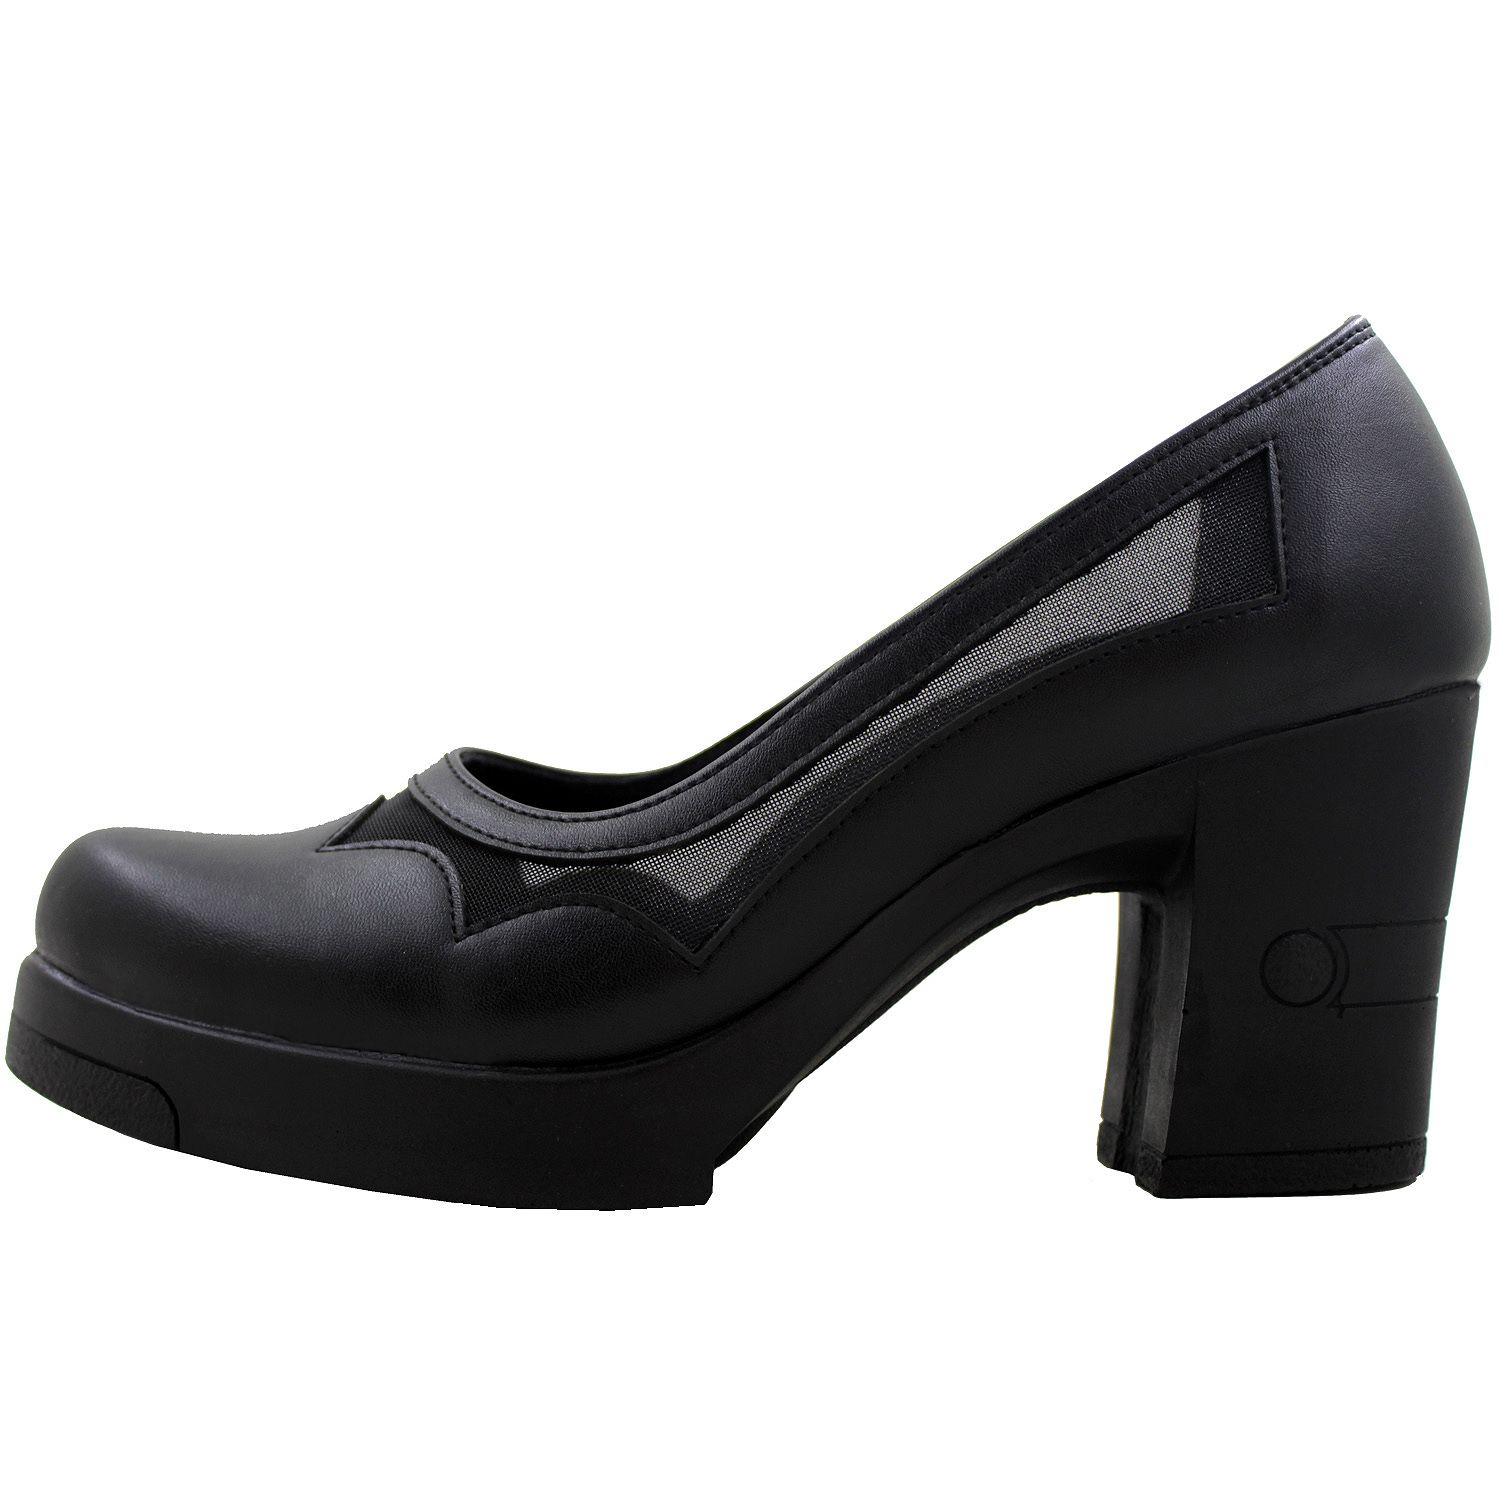 کفش زنانه مدل هانی براوو کد 2010 -  - 1